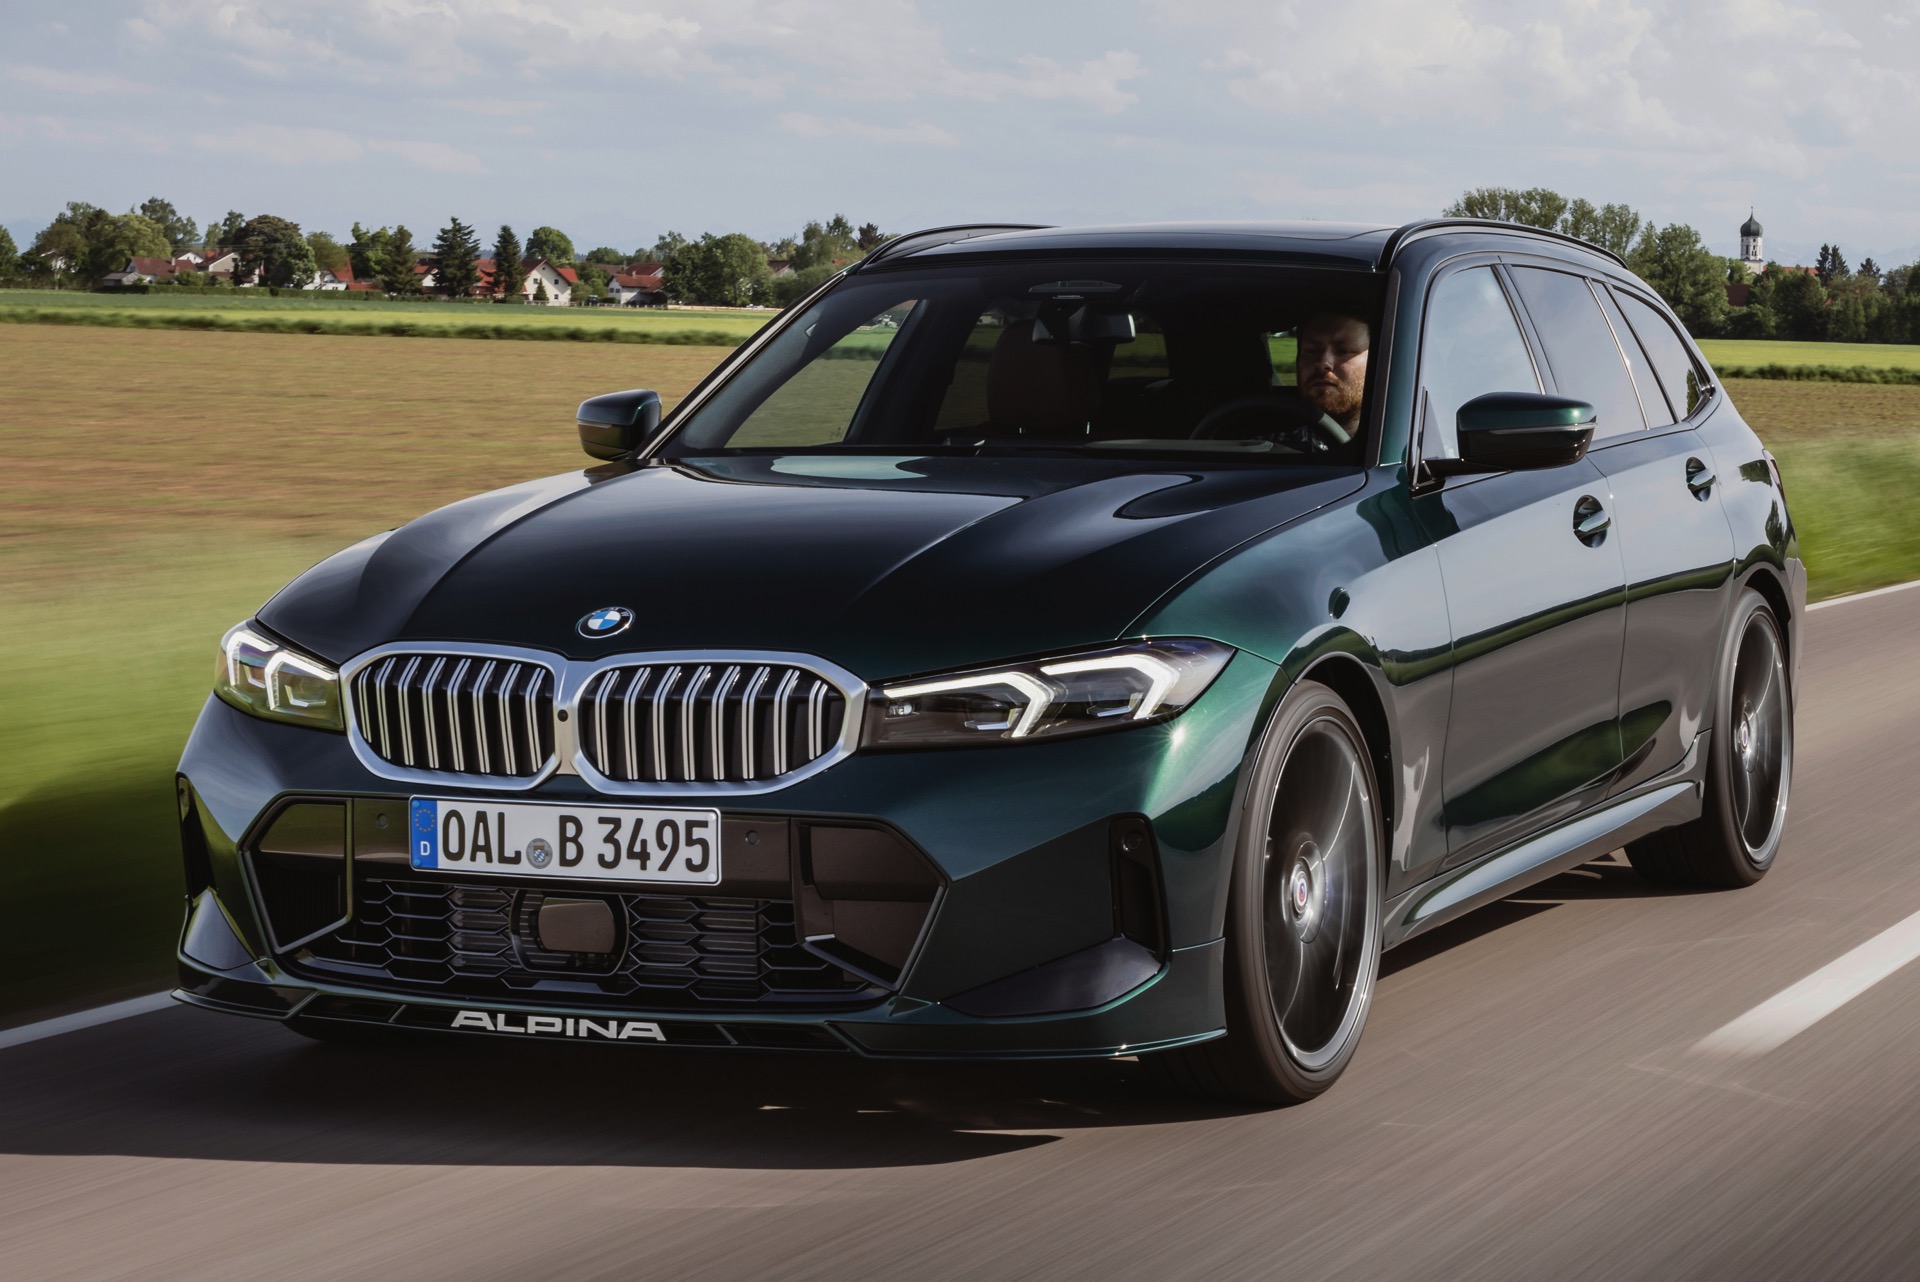 https://cdn.bimmertoday.de/wp-content/uploads/2022/05/BMW-Alpina-B3-Touring-Facelift-2022-D3-G21-LCI-01.jpg